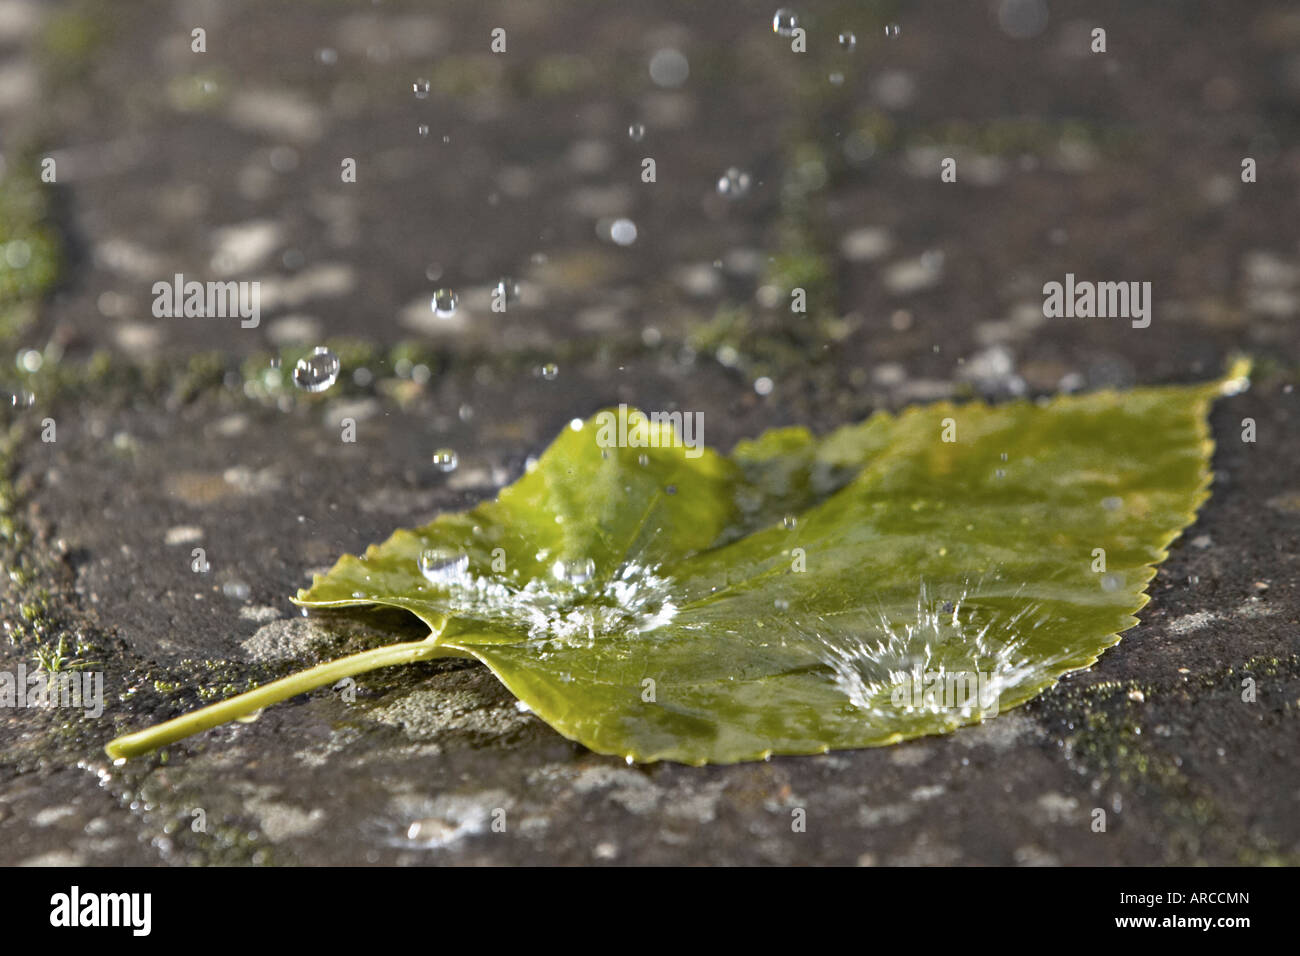 Raindrops splashing on a leaf Stock Photo